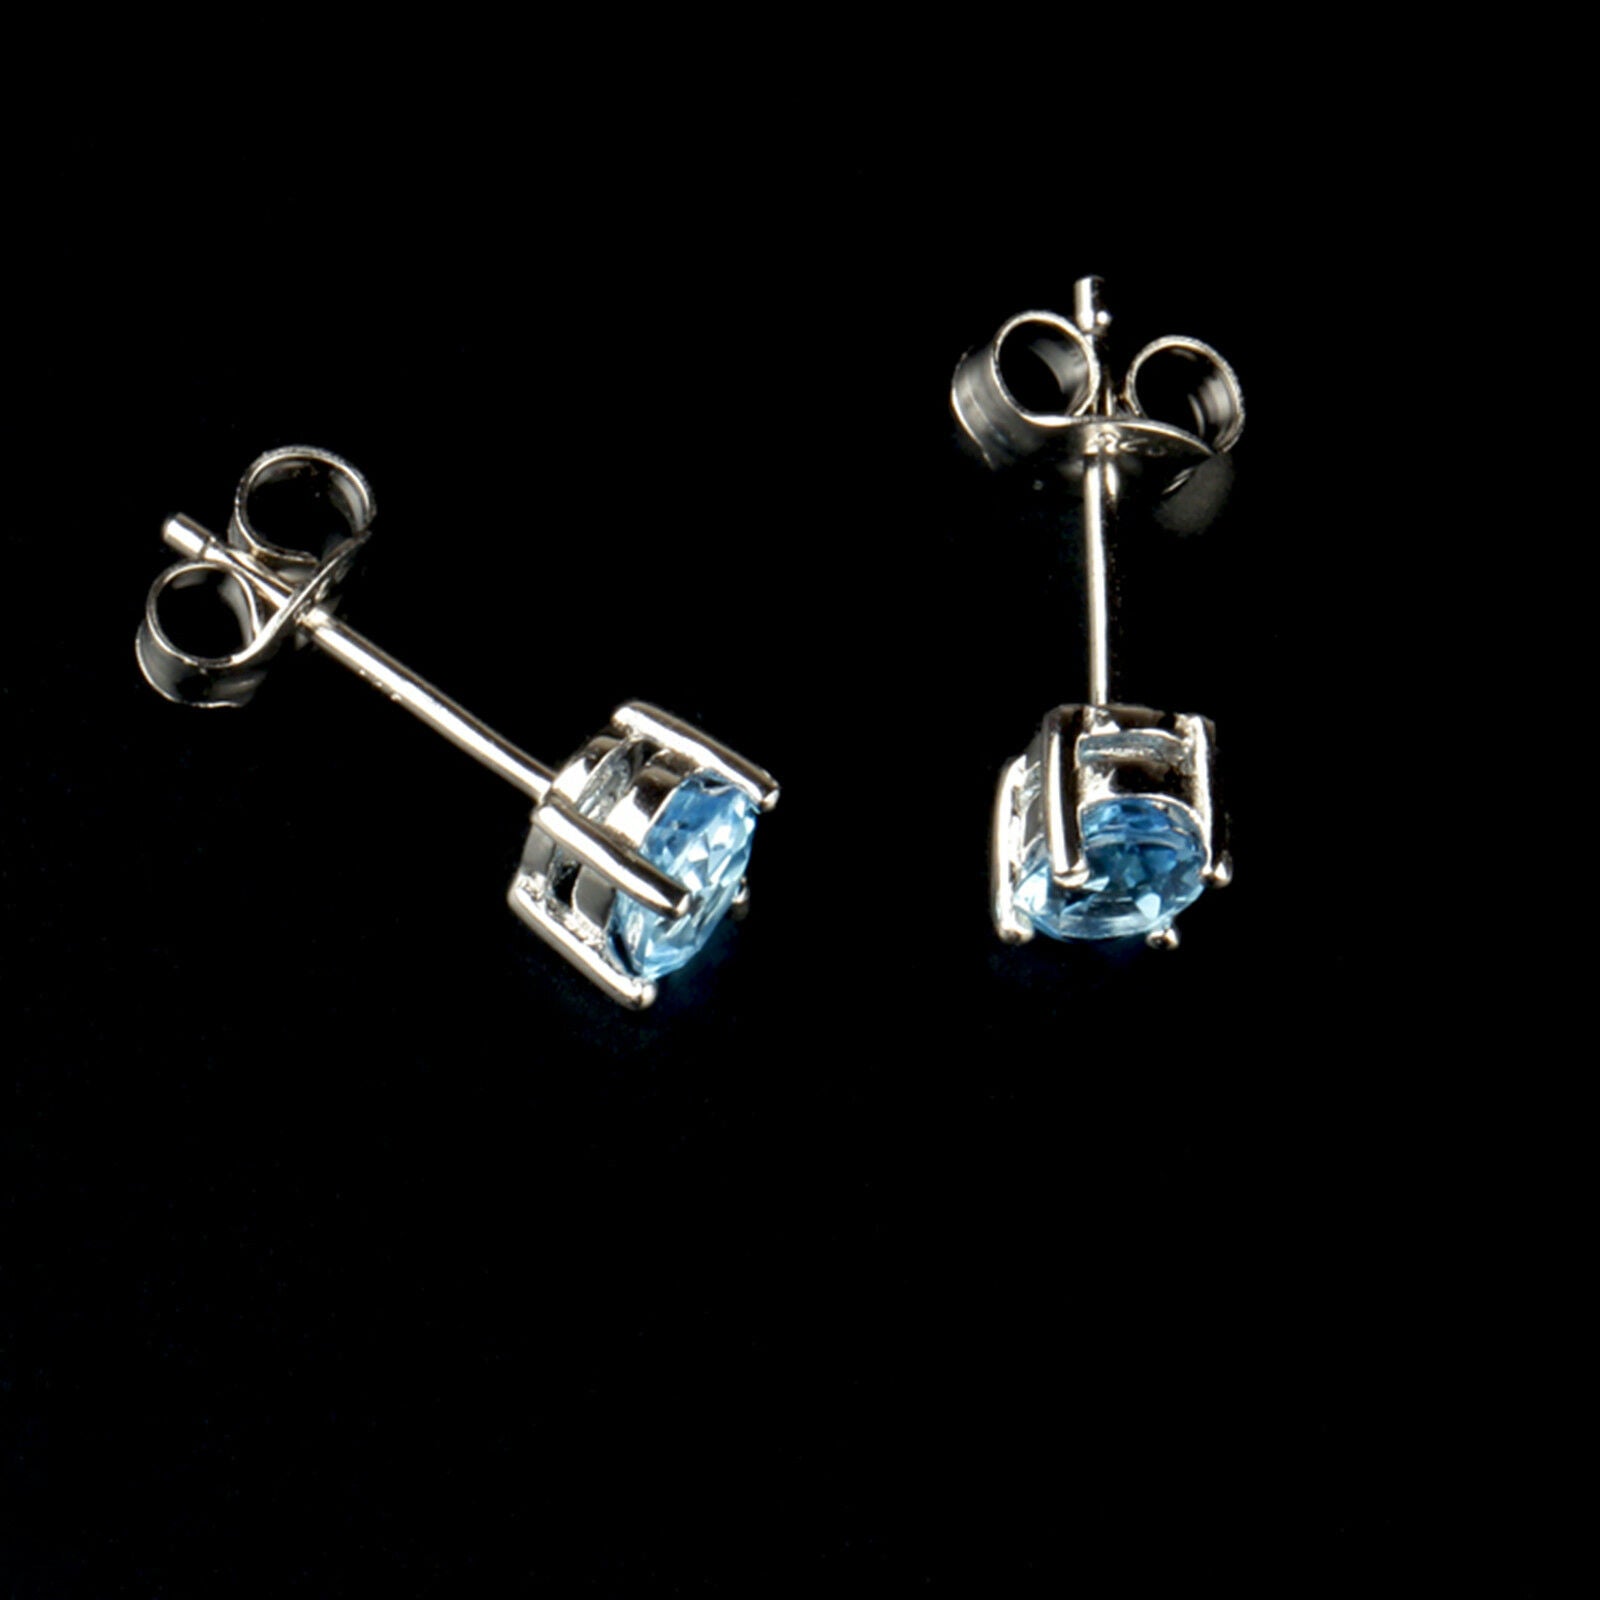 925 Sterling Silver Solitaire Blue Oval Cut CZ Stud Earrings - sugarkittenlondon